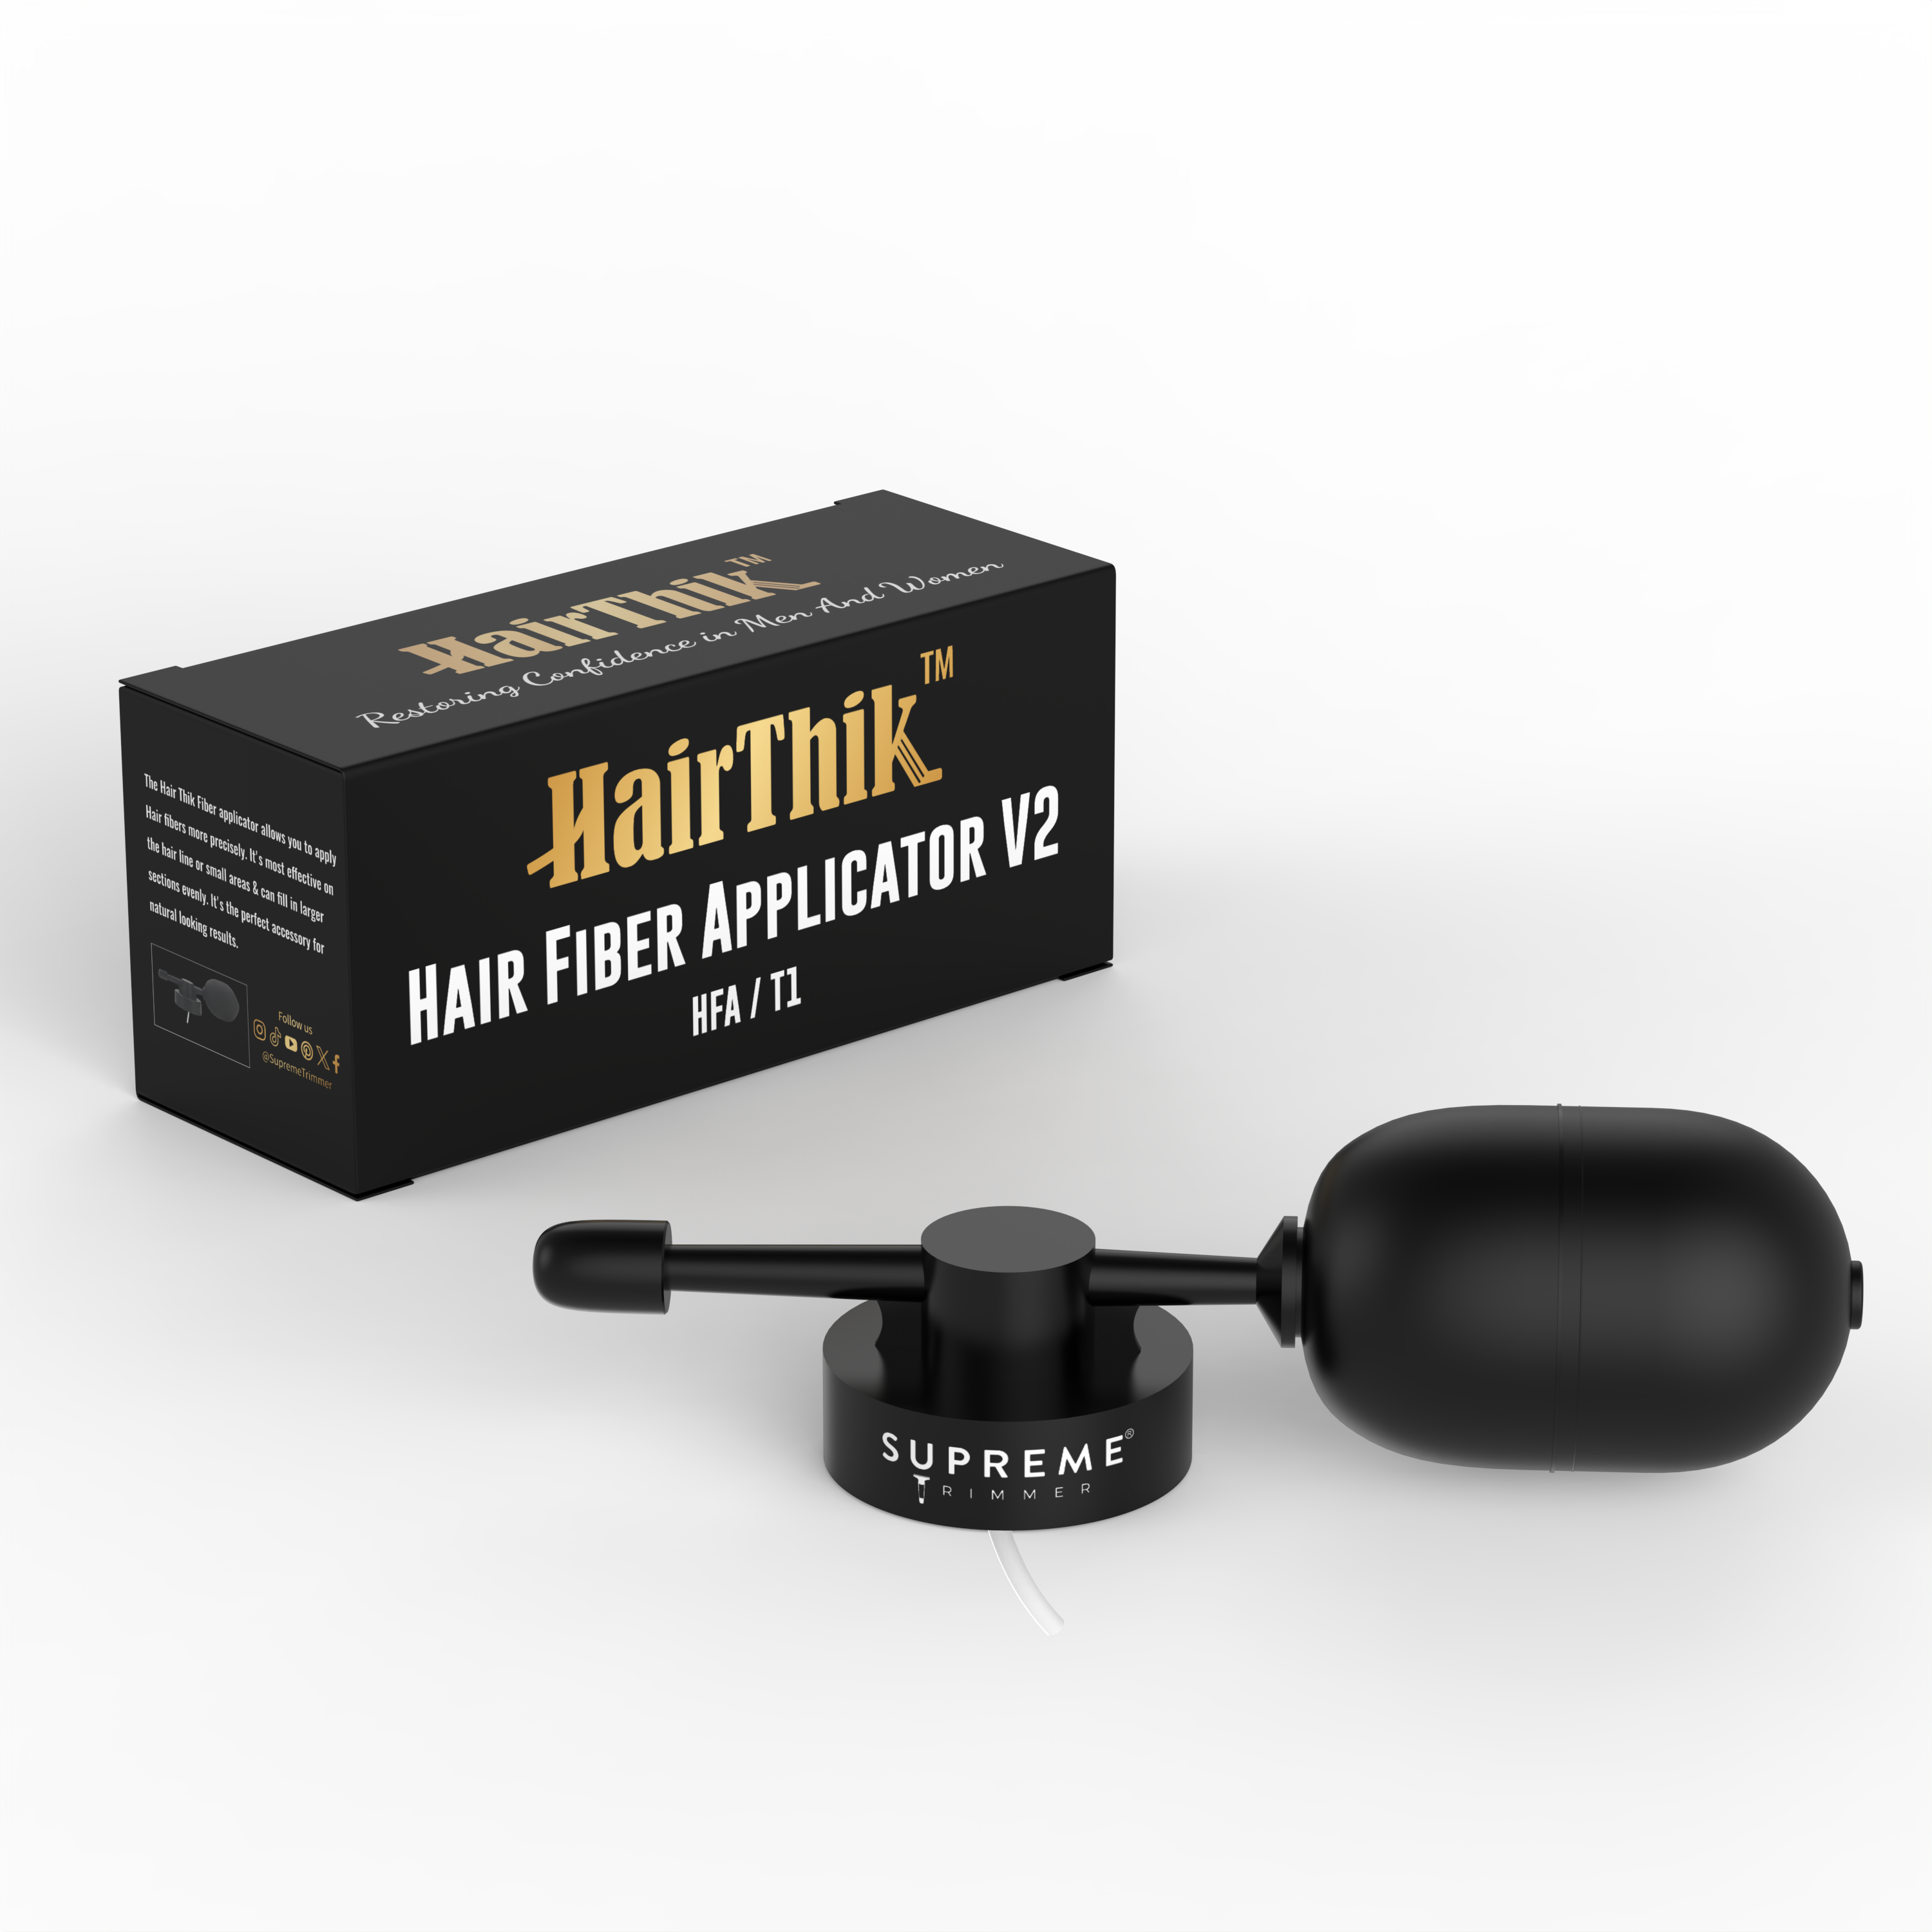 Applicator for HairThik Fibers - Hair Fiber Applicator - Supreme Trimmer Mens Trimmer Grooming kit 